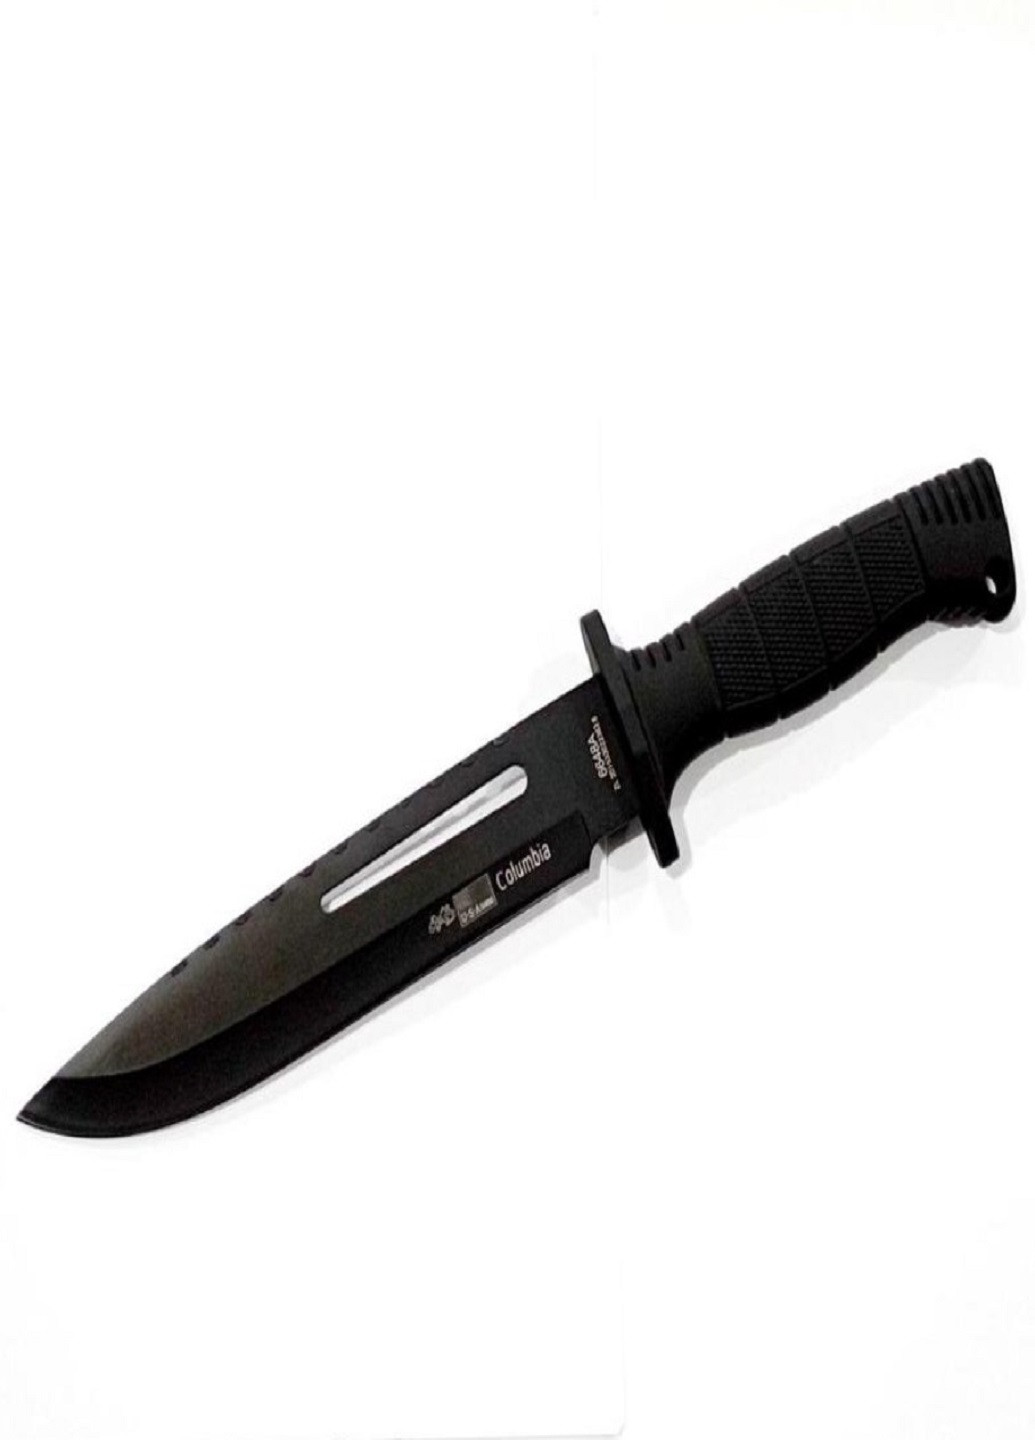 Униваерсальный туристический нож с чехлом Columbia 6648А 30см VTech (260267025)